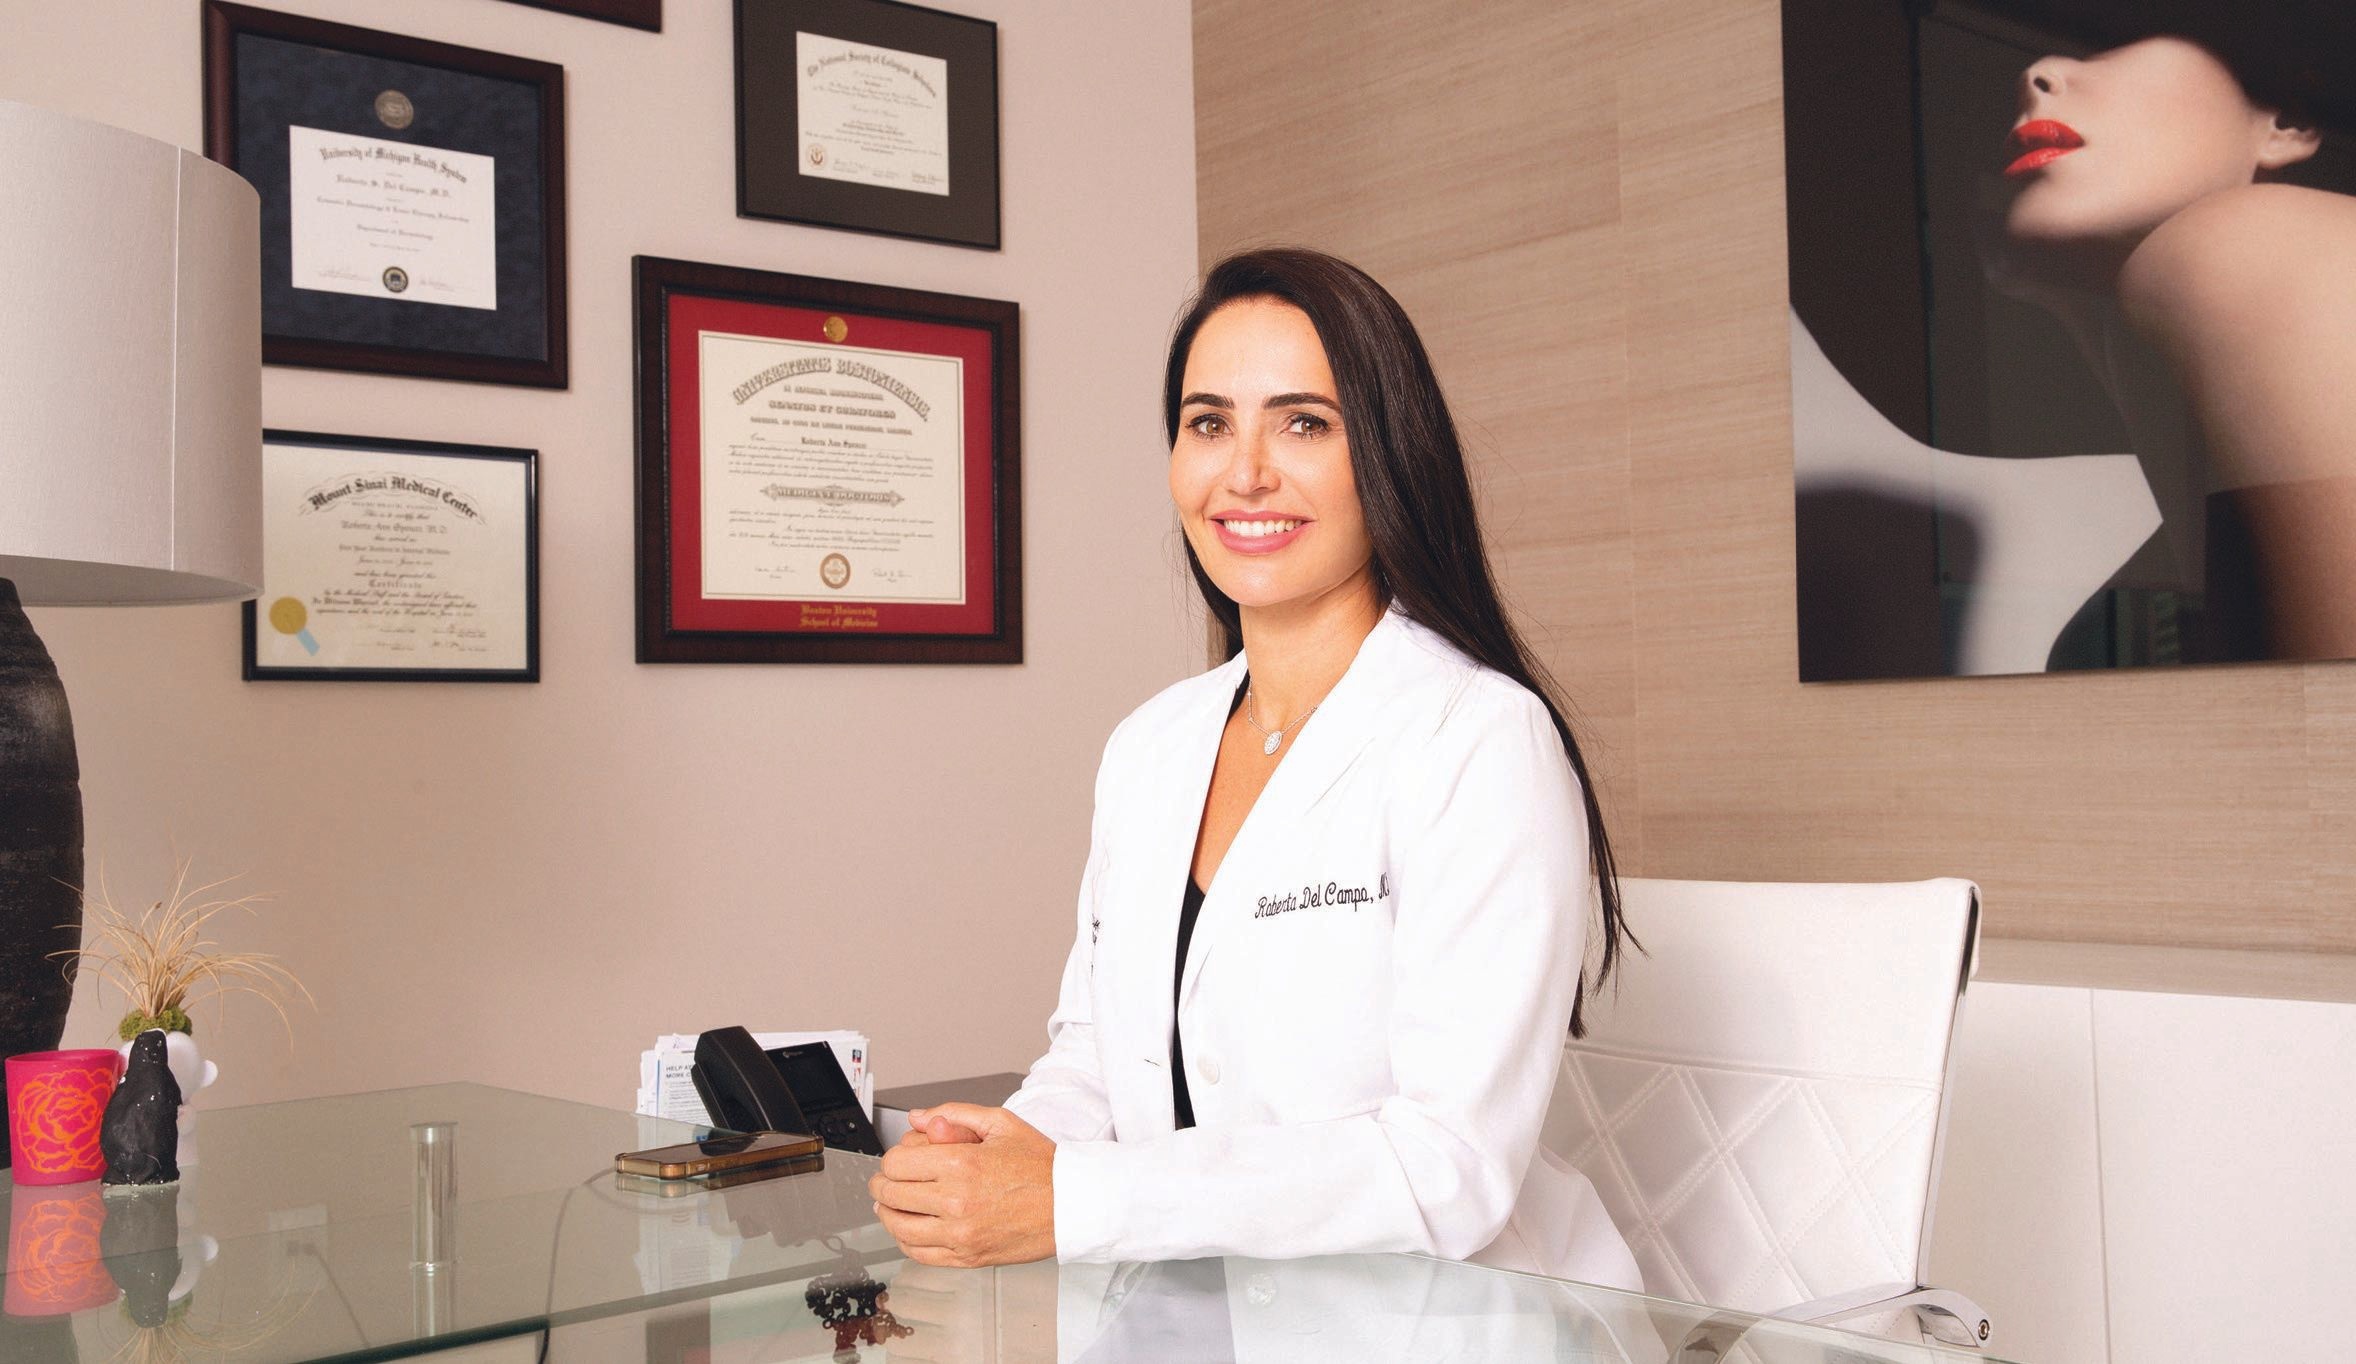 Board-certified dermatologist Dr. Roberta Del Campo PHOTO COURTESY OF DR. ROBERTA DEL CAMPO